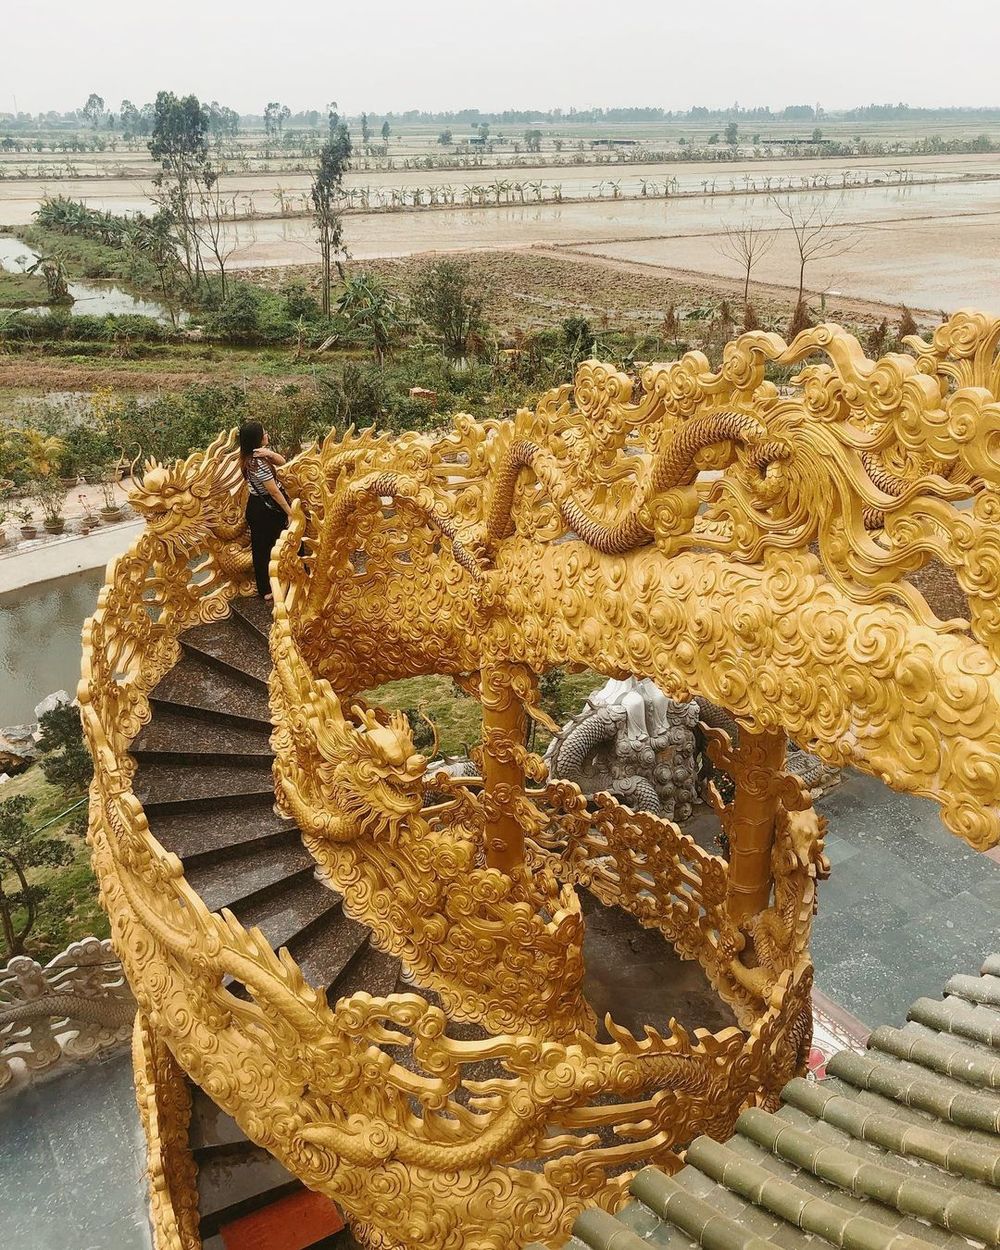 Về Hưng Yên thăm ngôi chùa Phúc Lâm dát vàng, đẹp như chùa Vàng Thái Lan - Ảnh 6